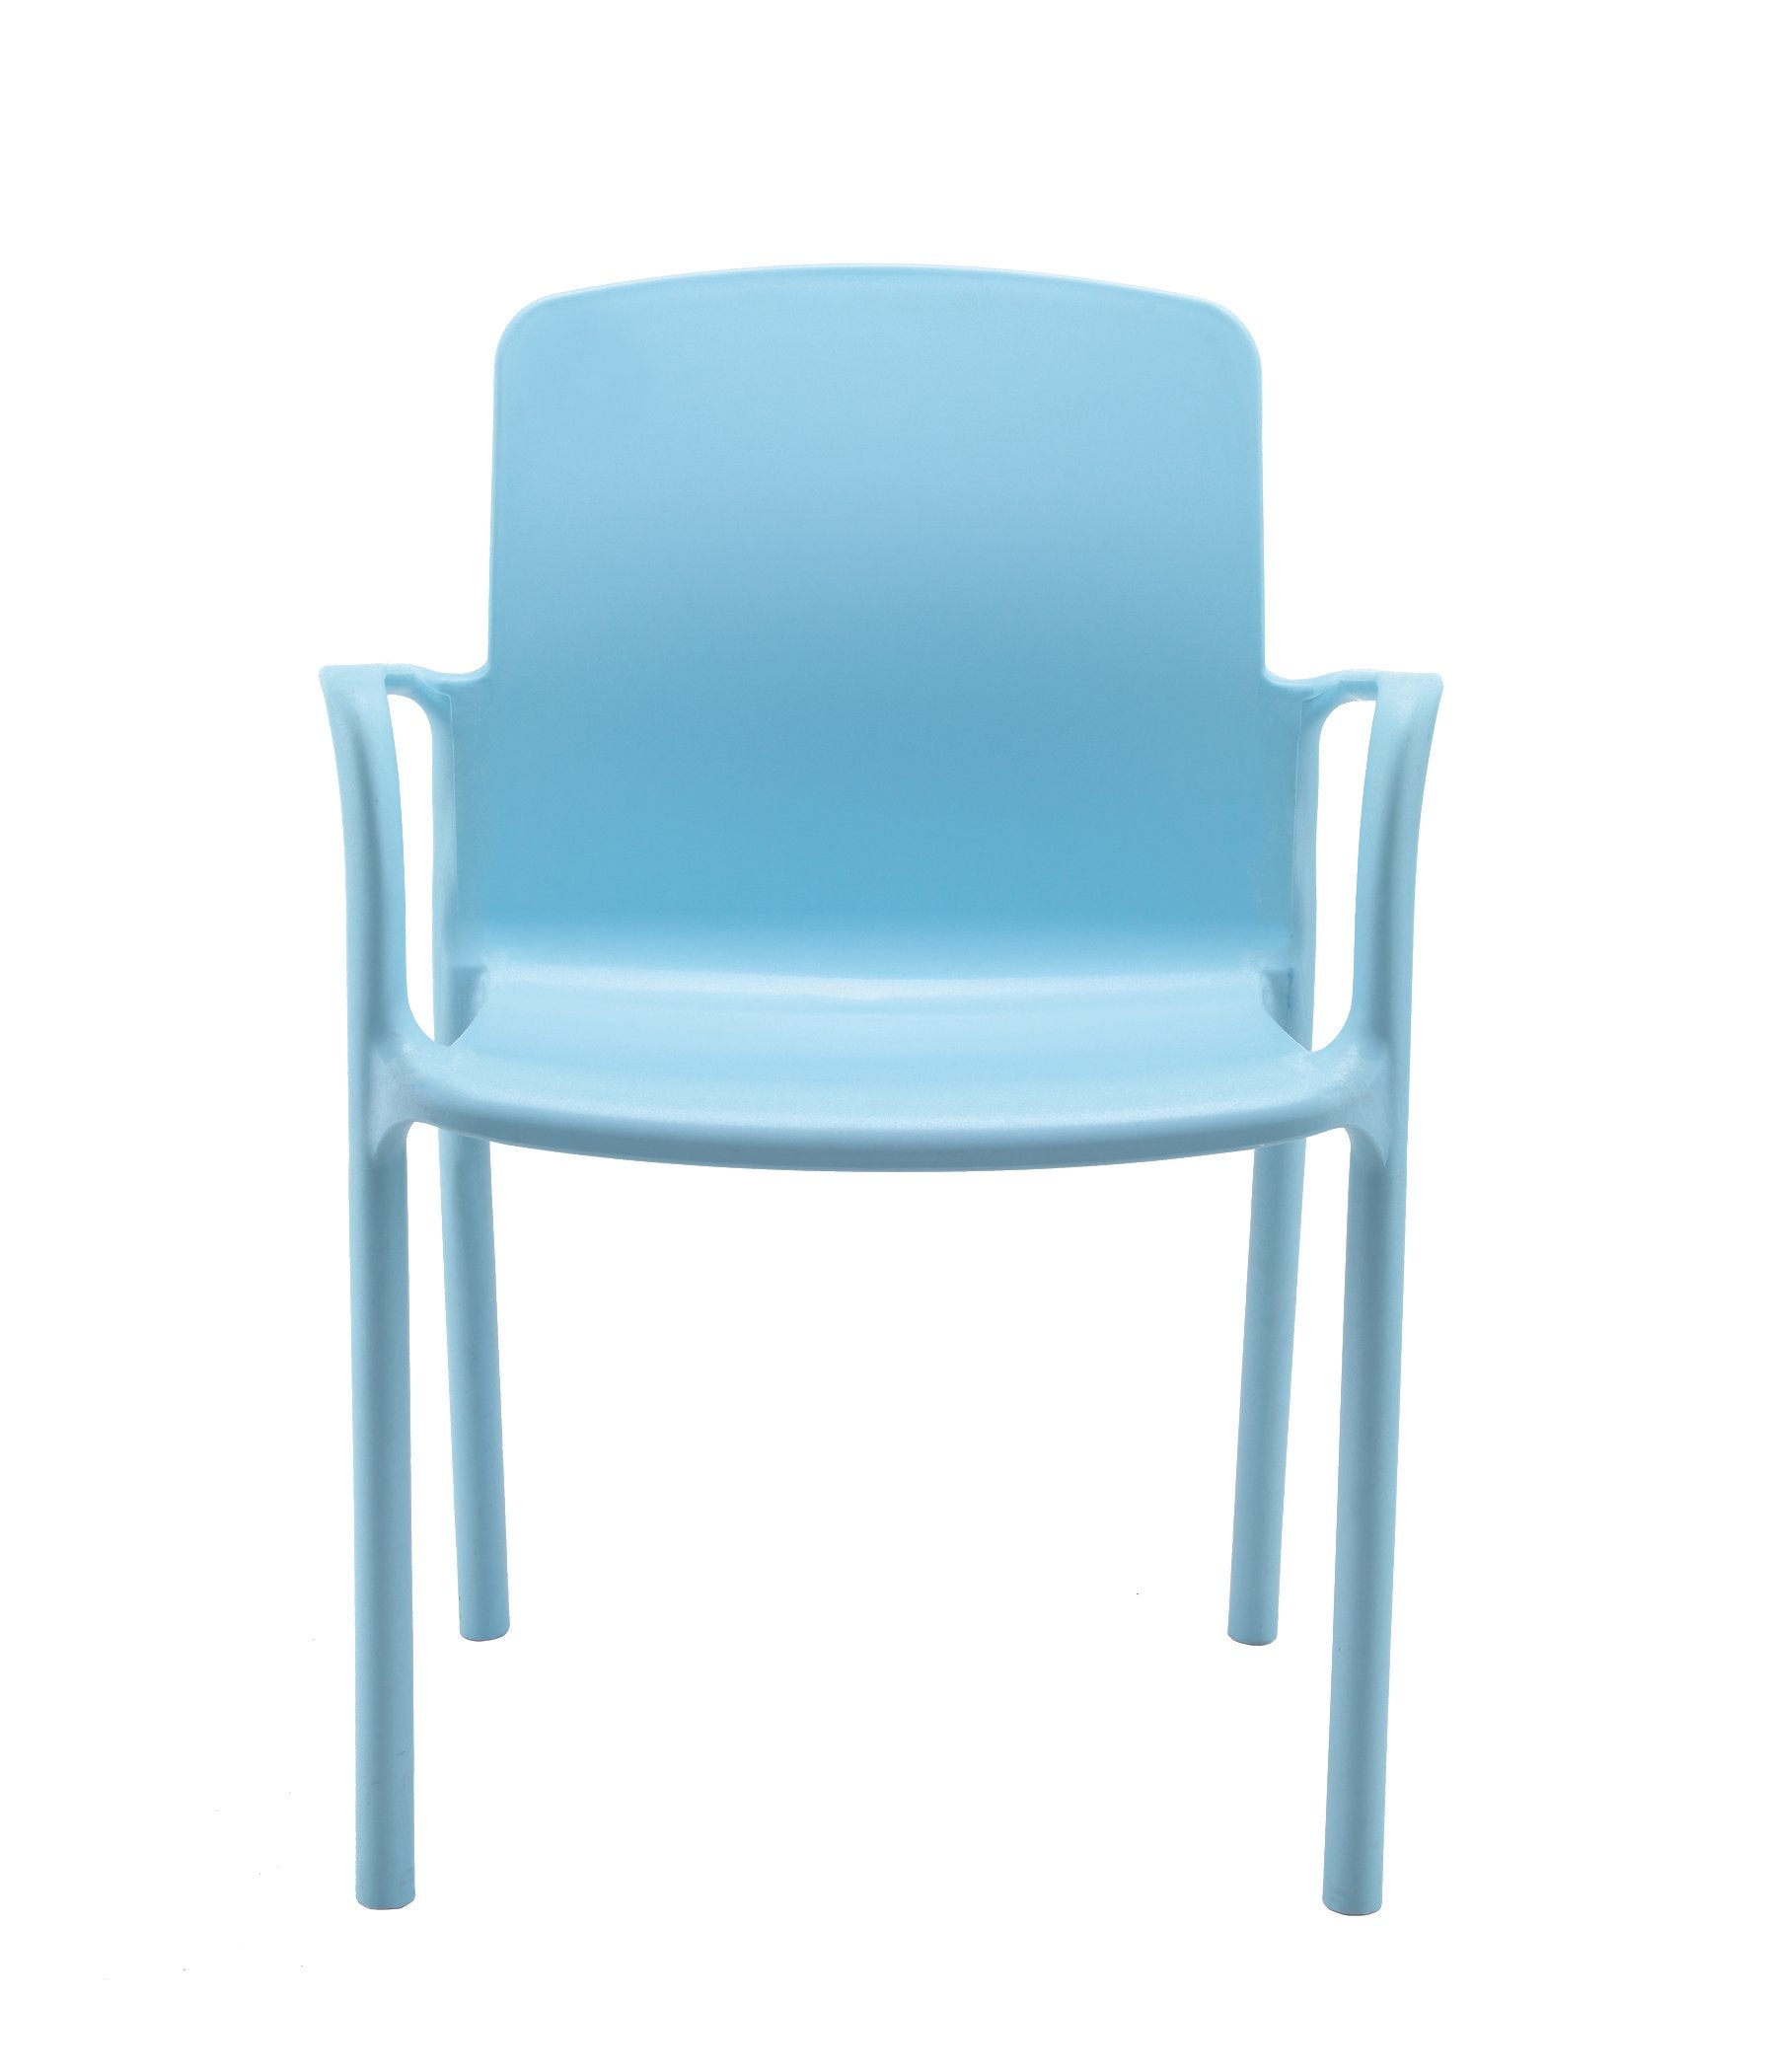 Florey Antimicrobial Chair-Arm Chair